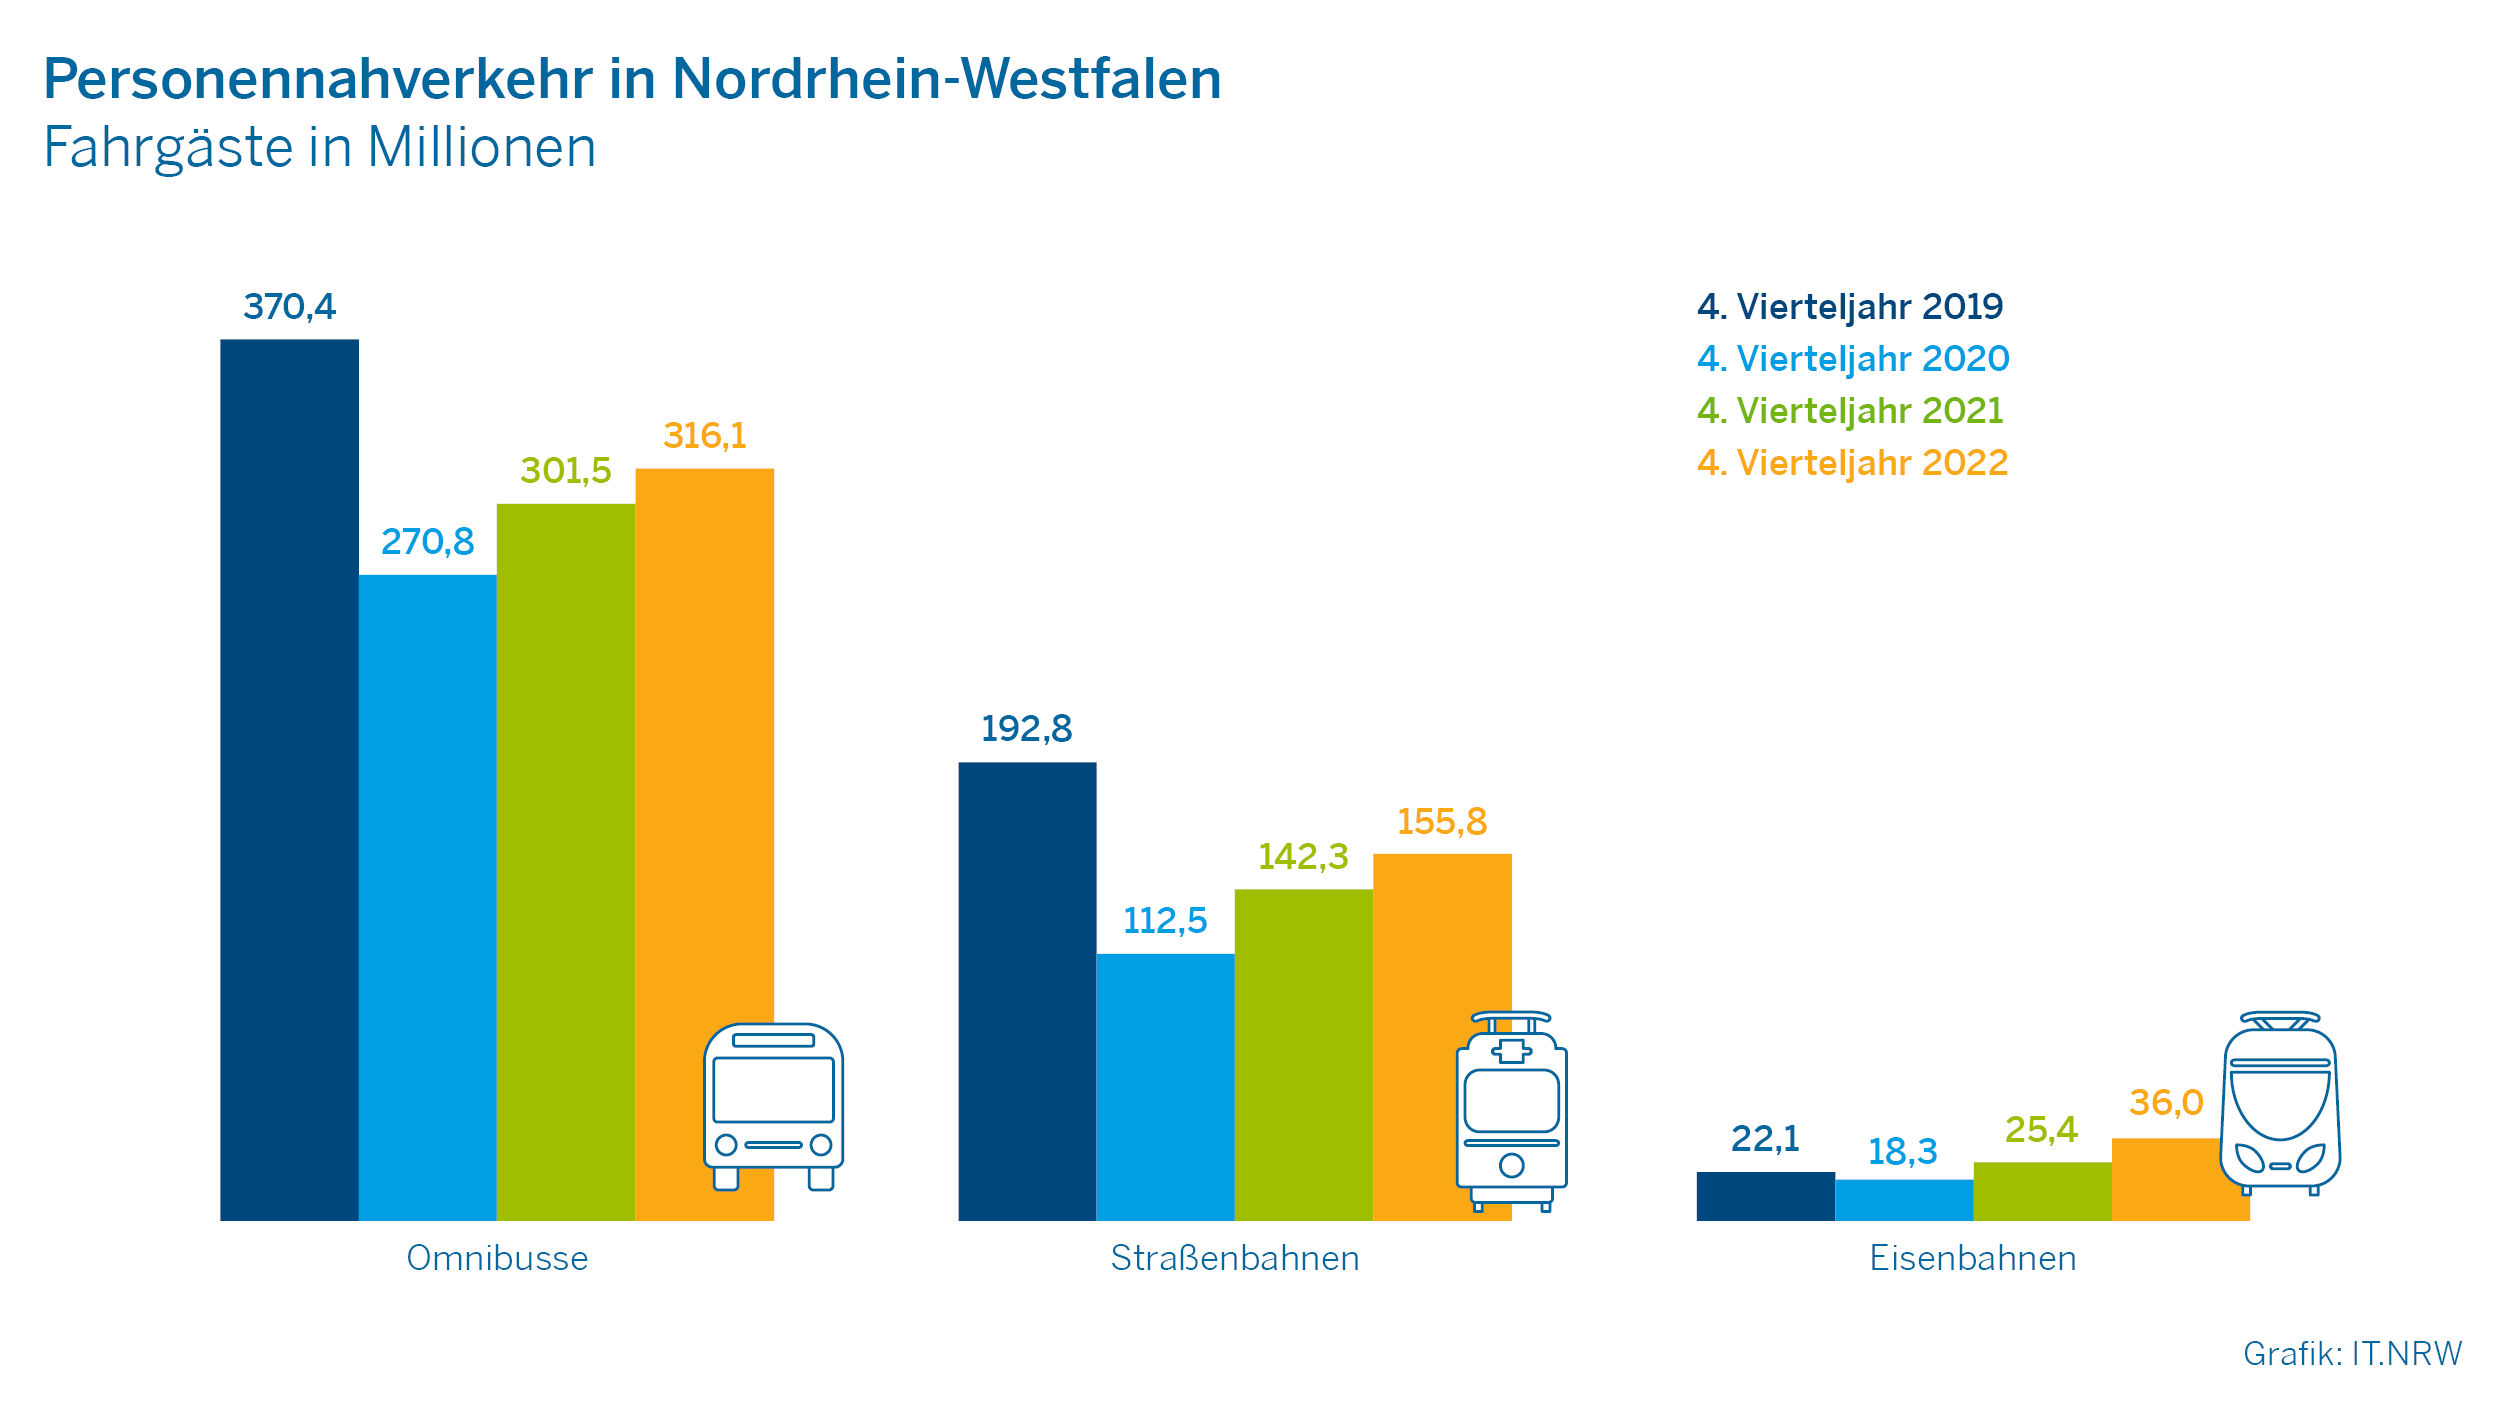 Personennahverkehr ín Nordrhein-Westfalen